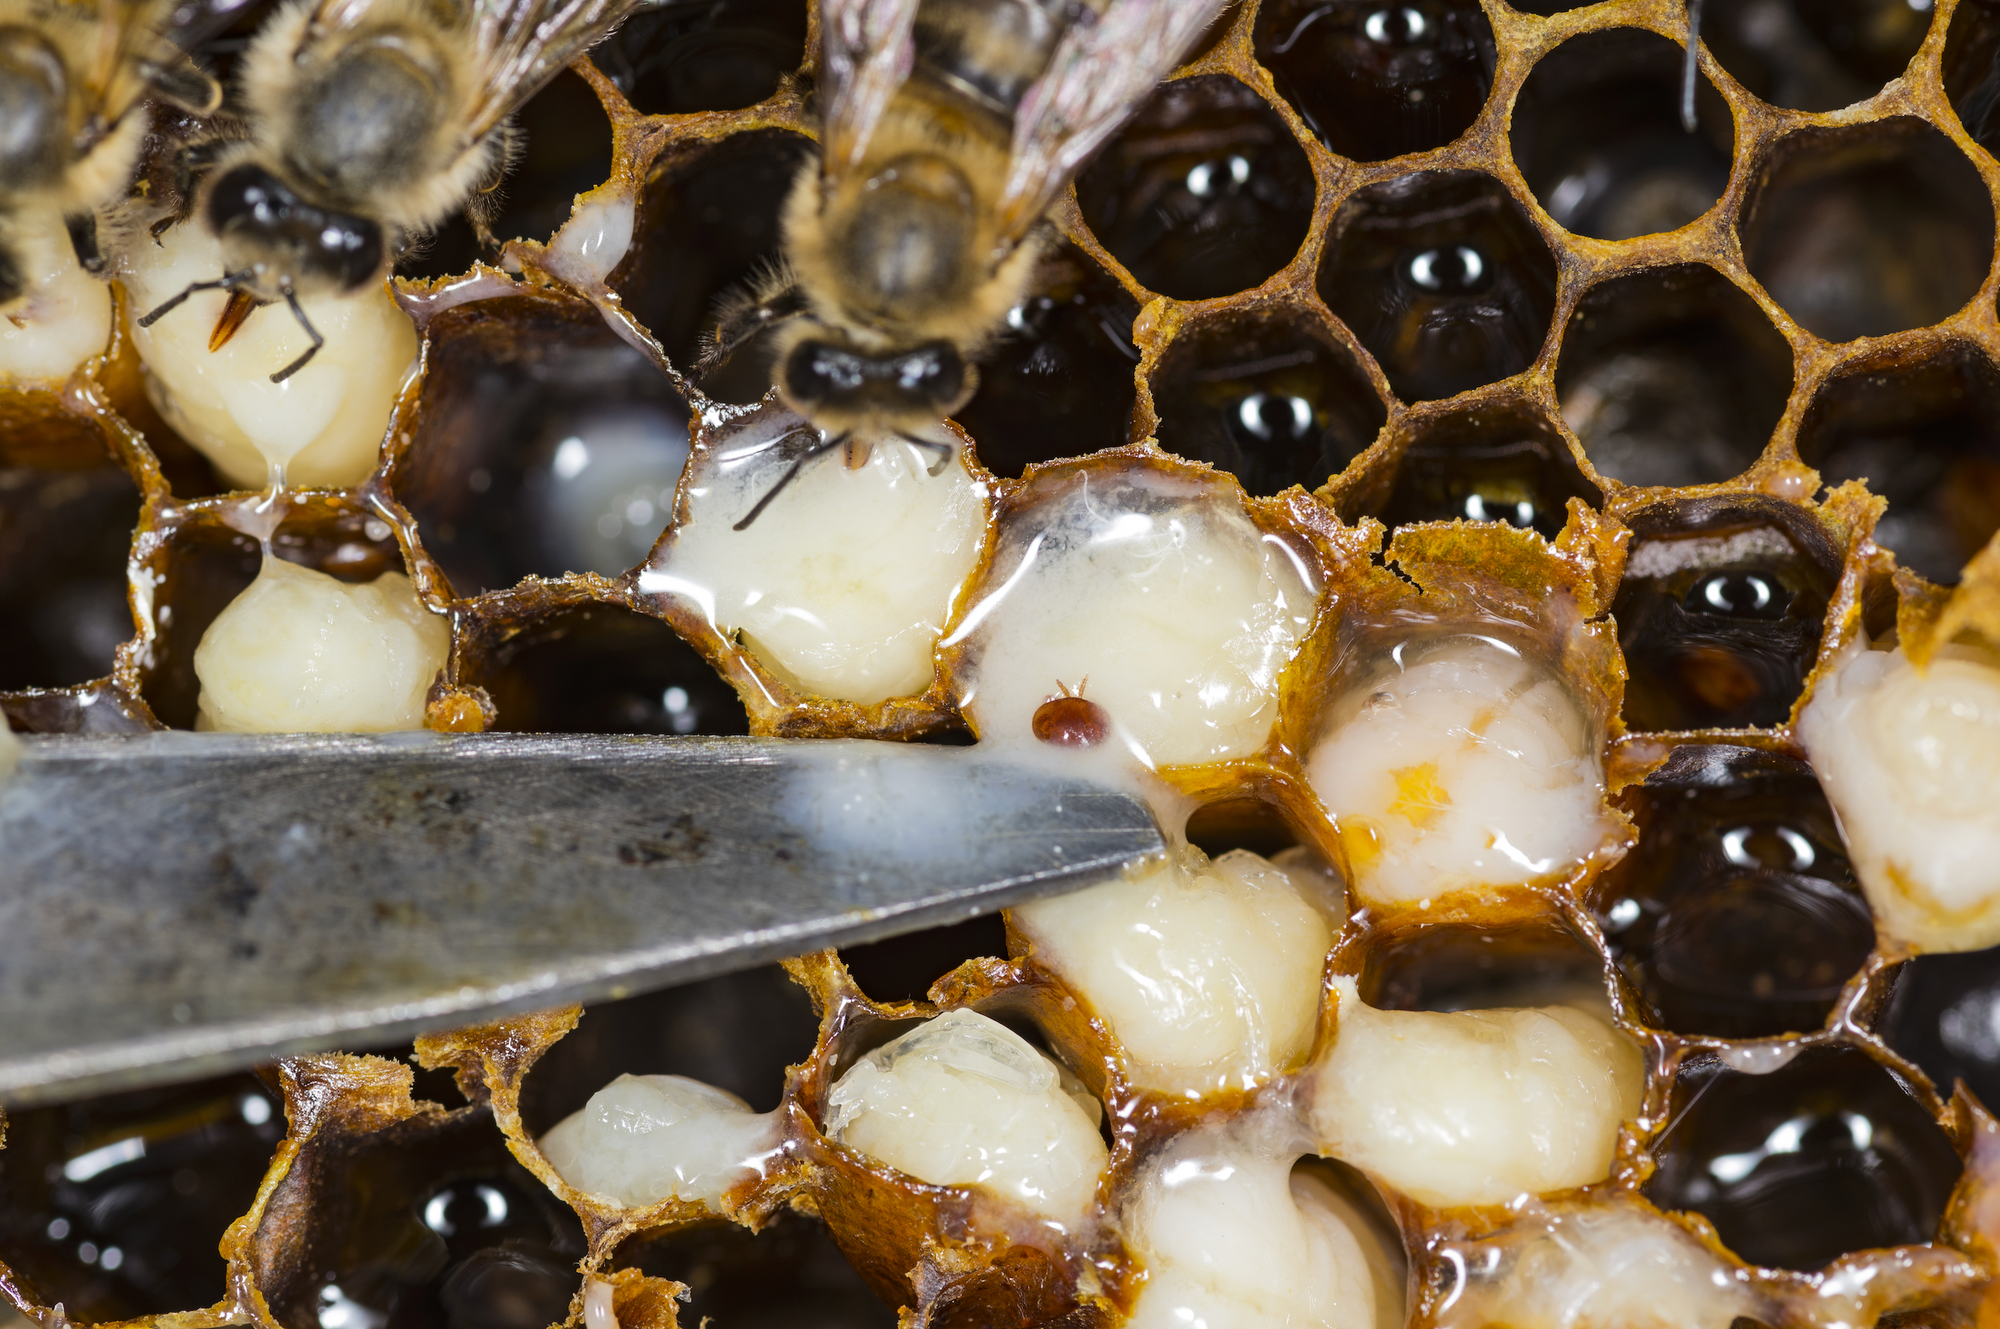 Varroa Mite Australia: When to Treat Your Hives for Varroa Mite in Australia